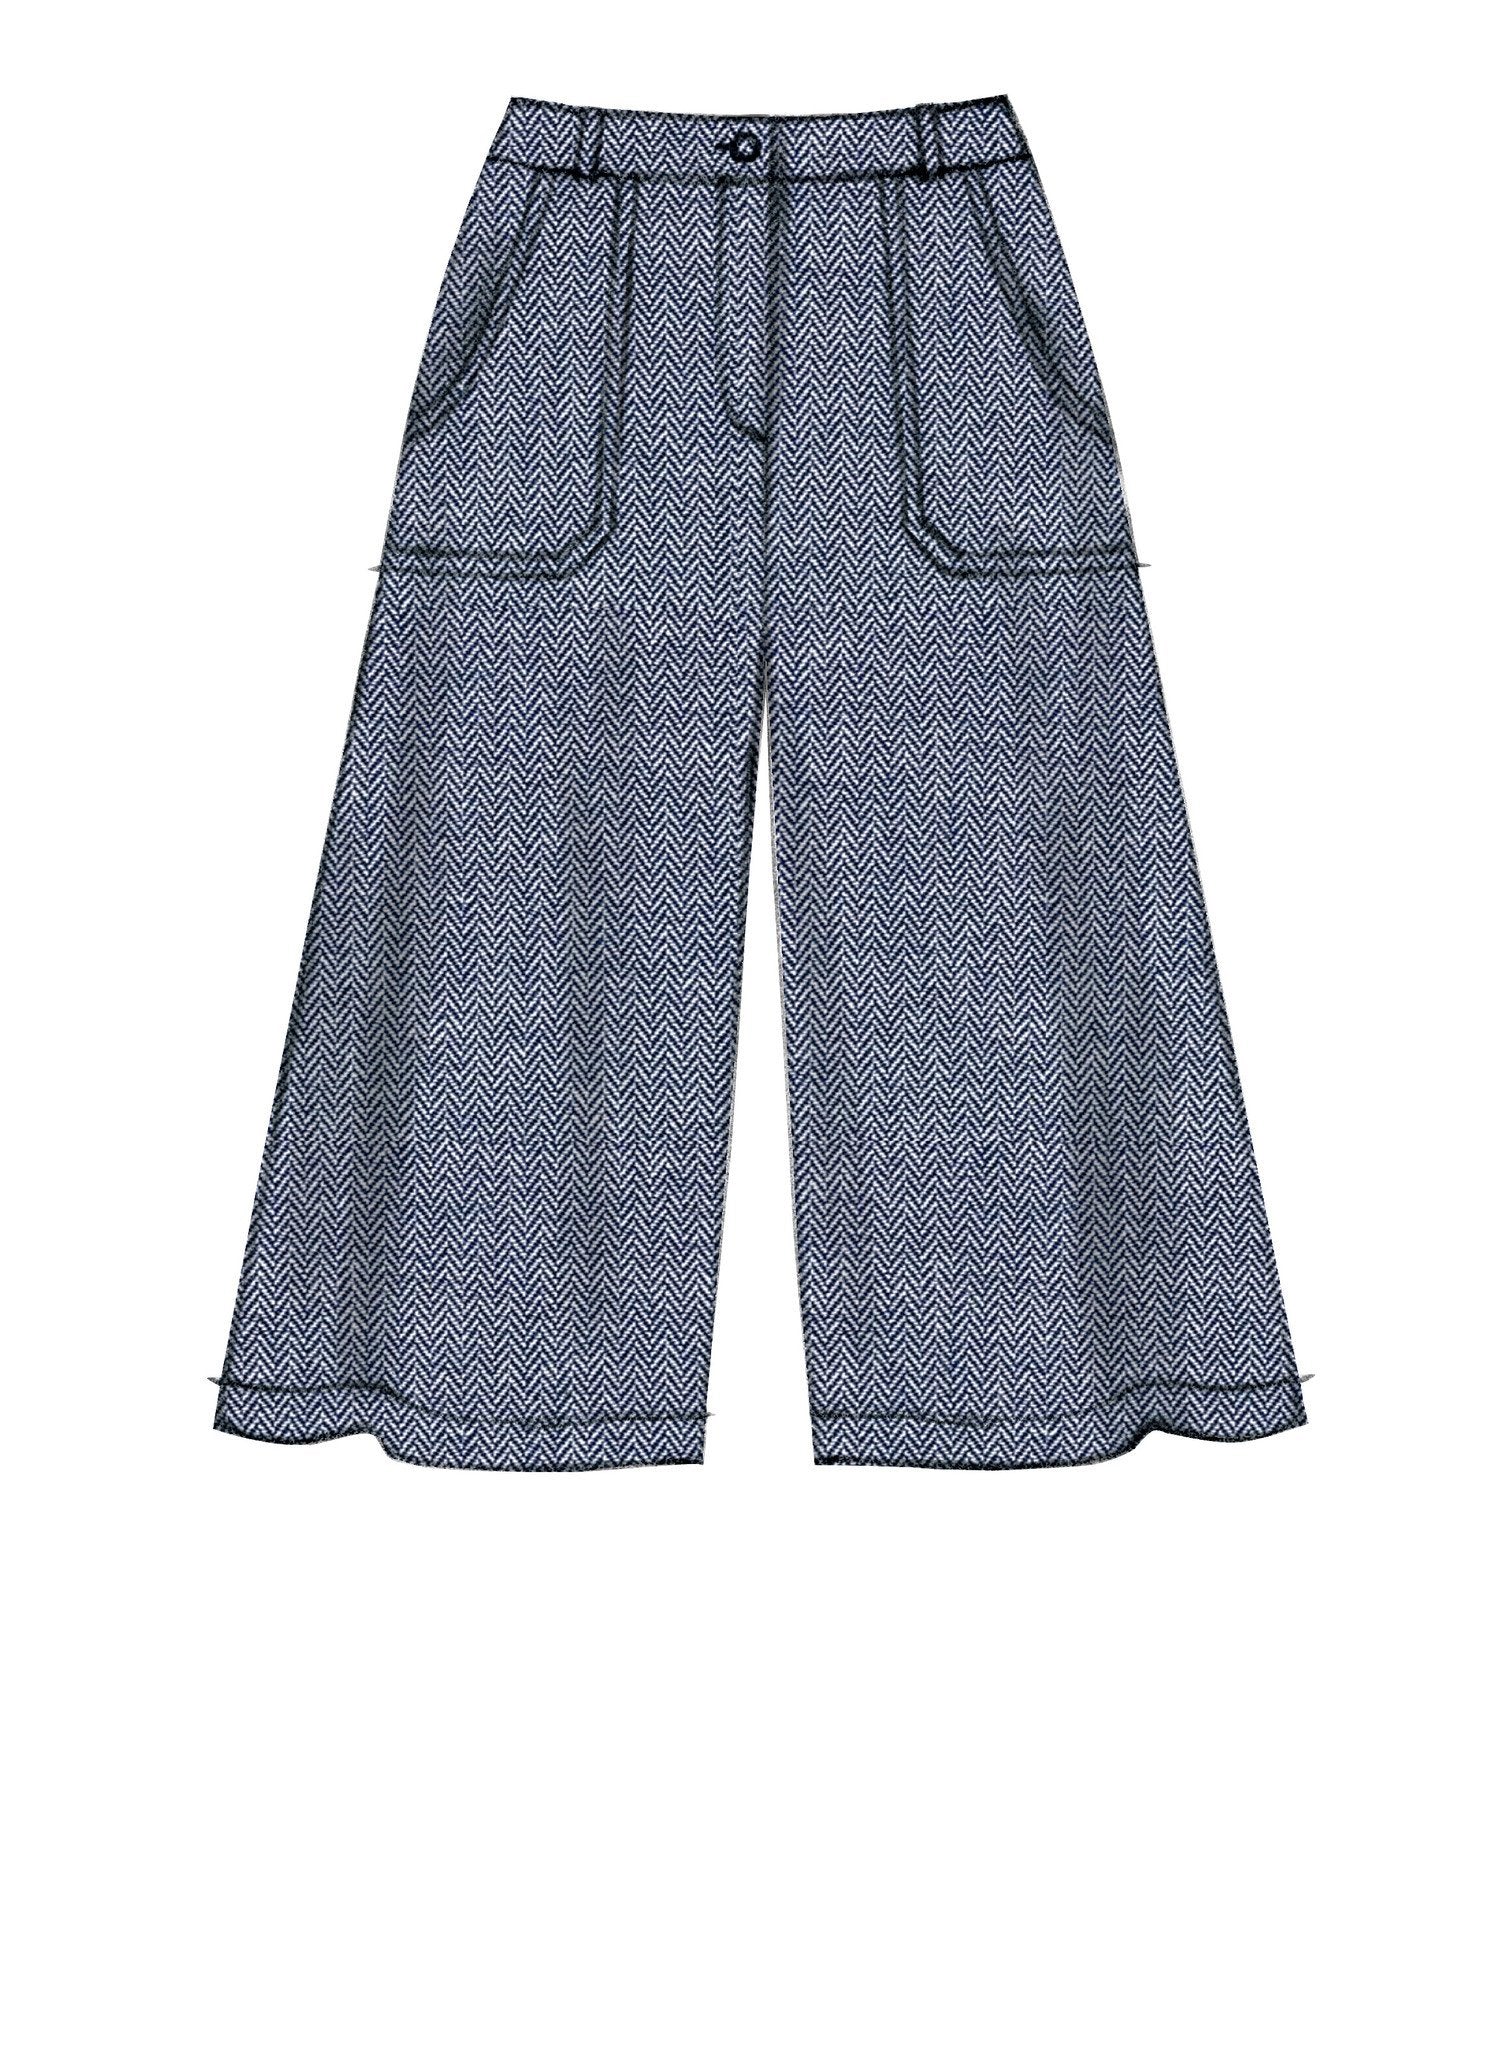 M7475 Misses' Flared Skirts, Shorts and Culottes — jaycotts.co.uk ...